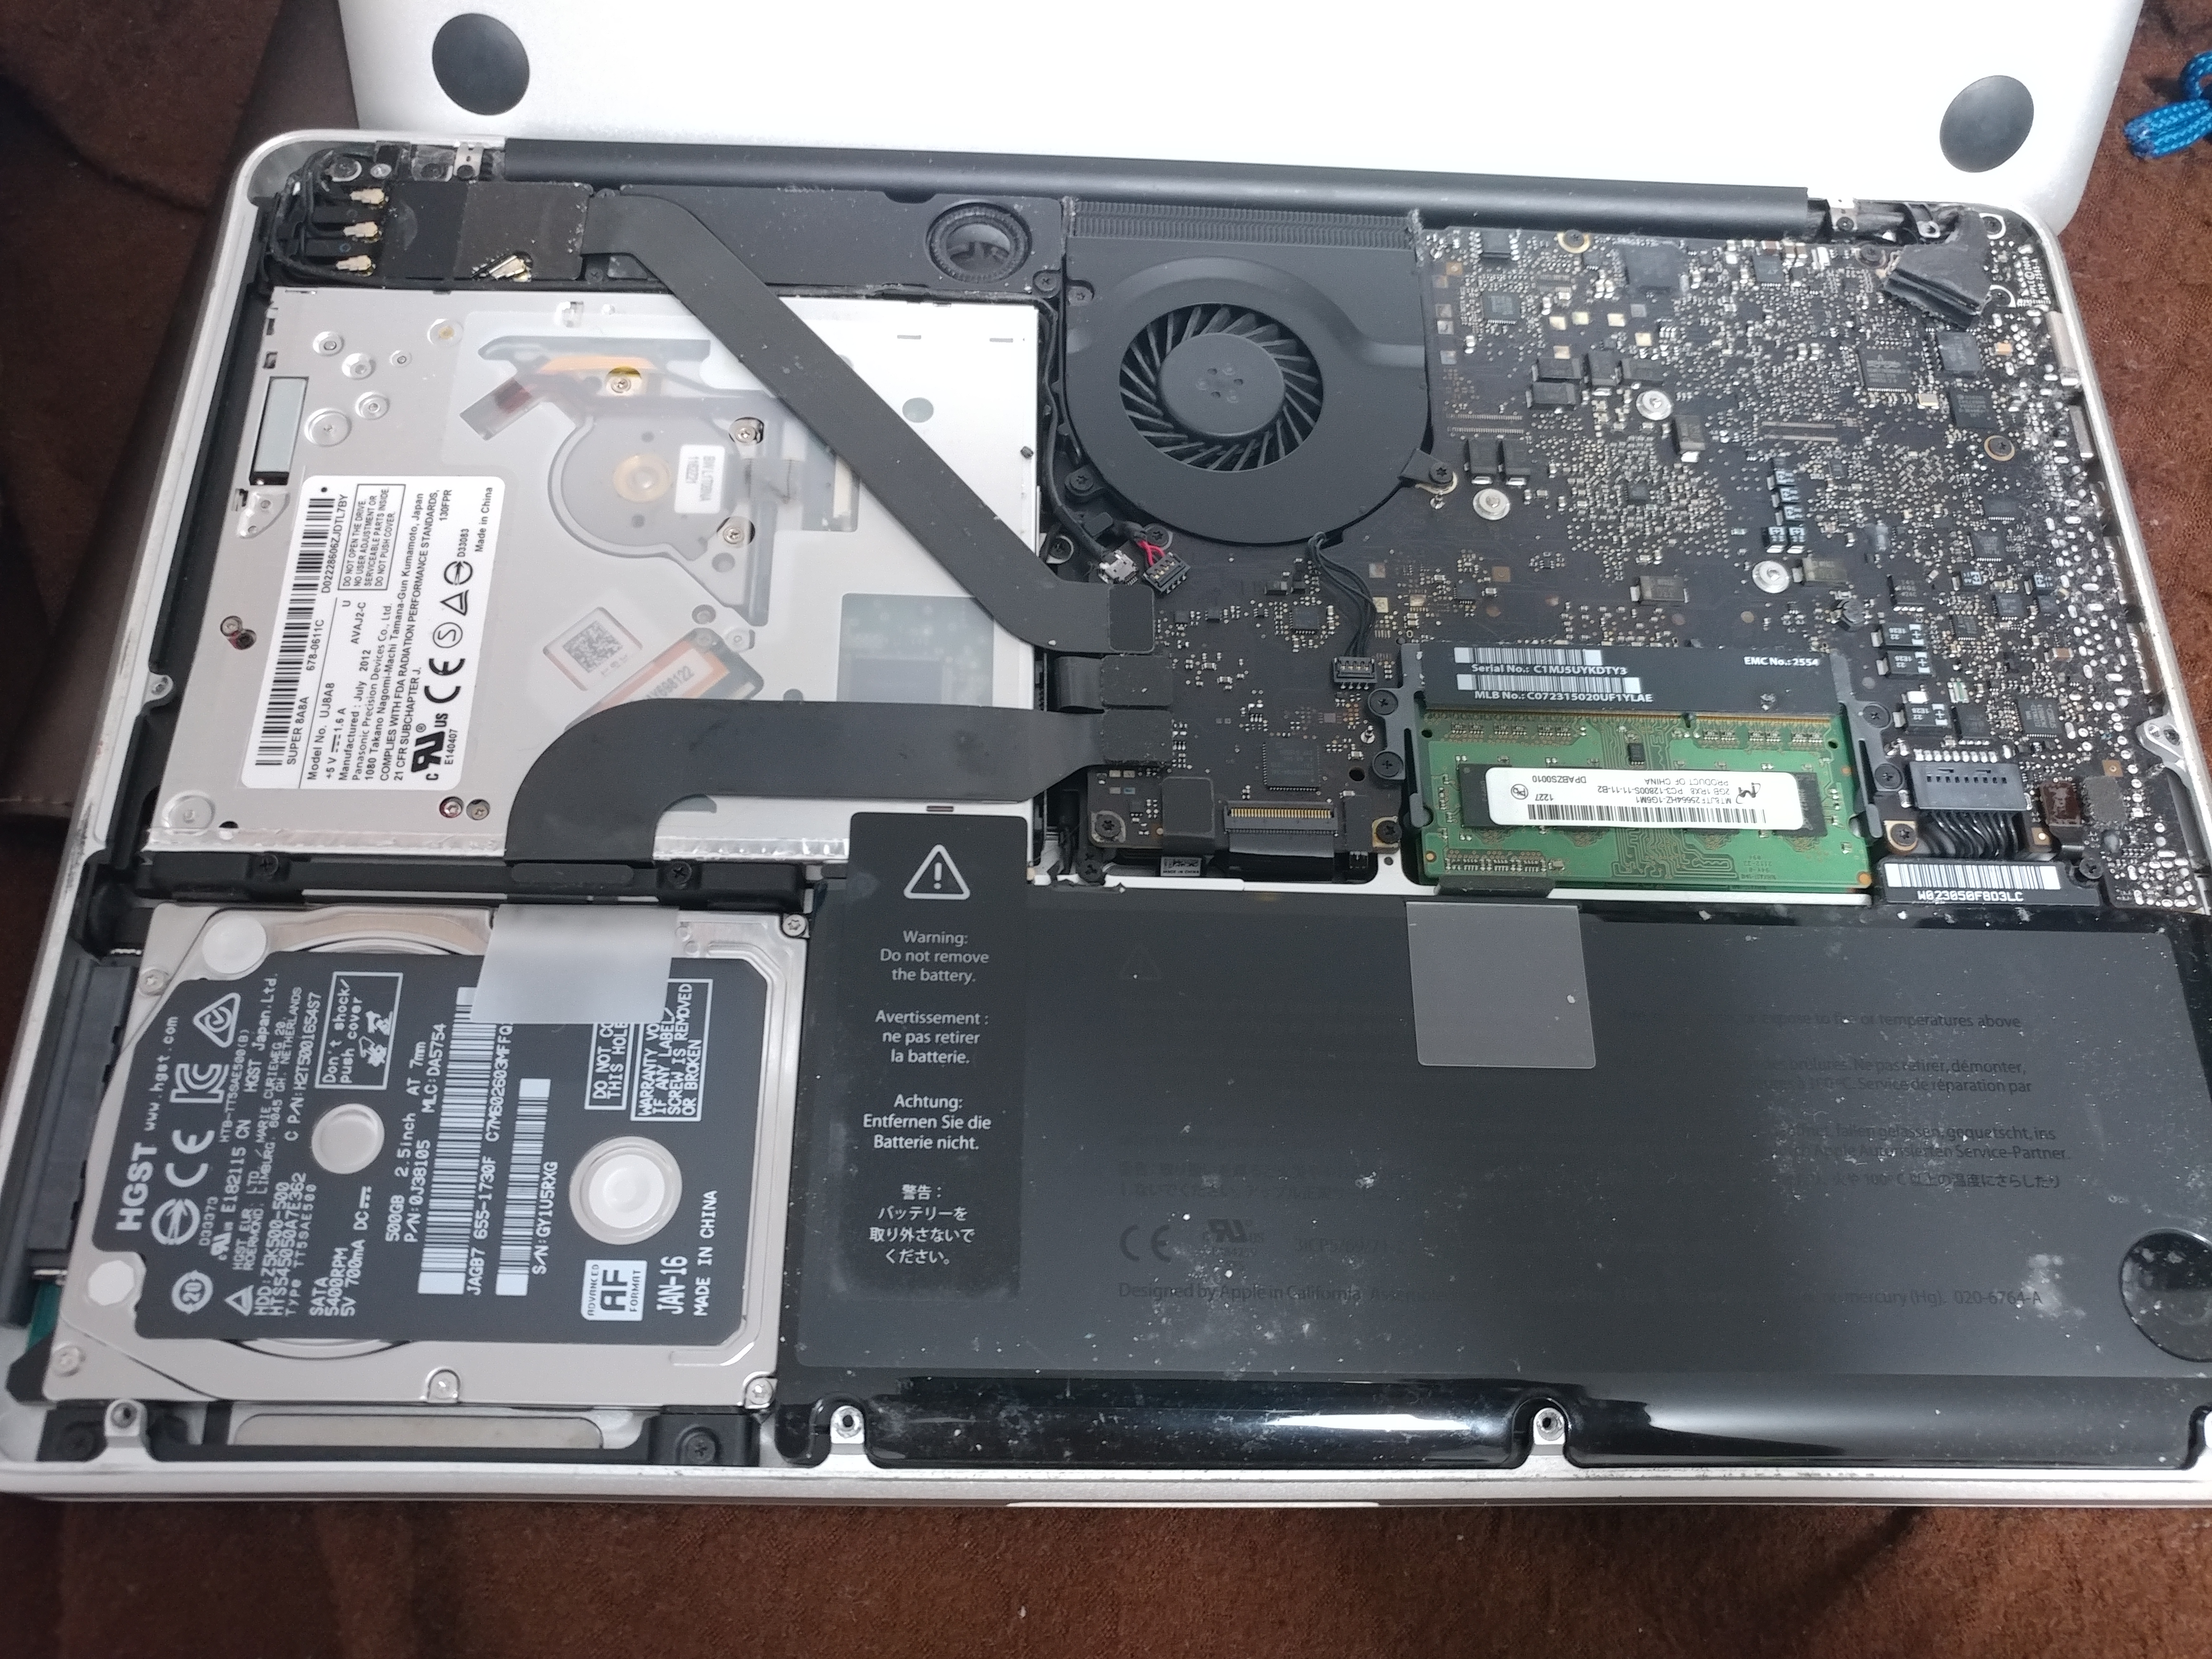 macbook repair